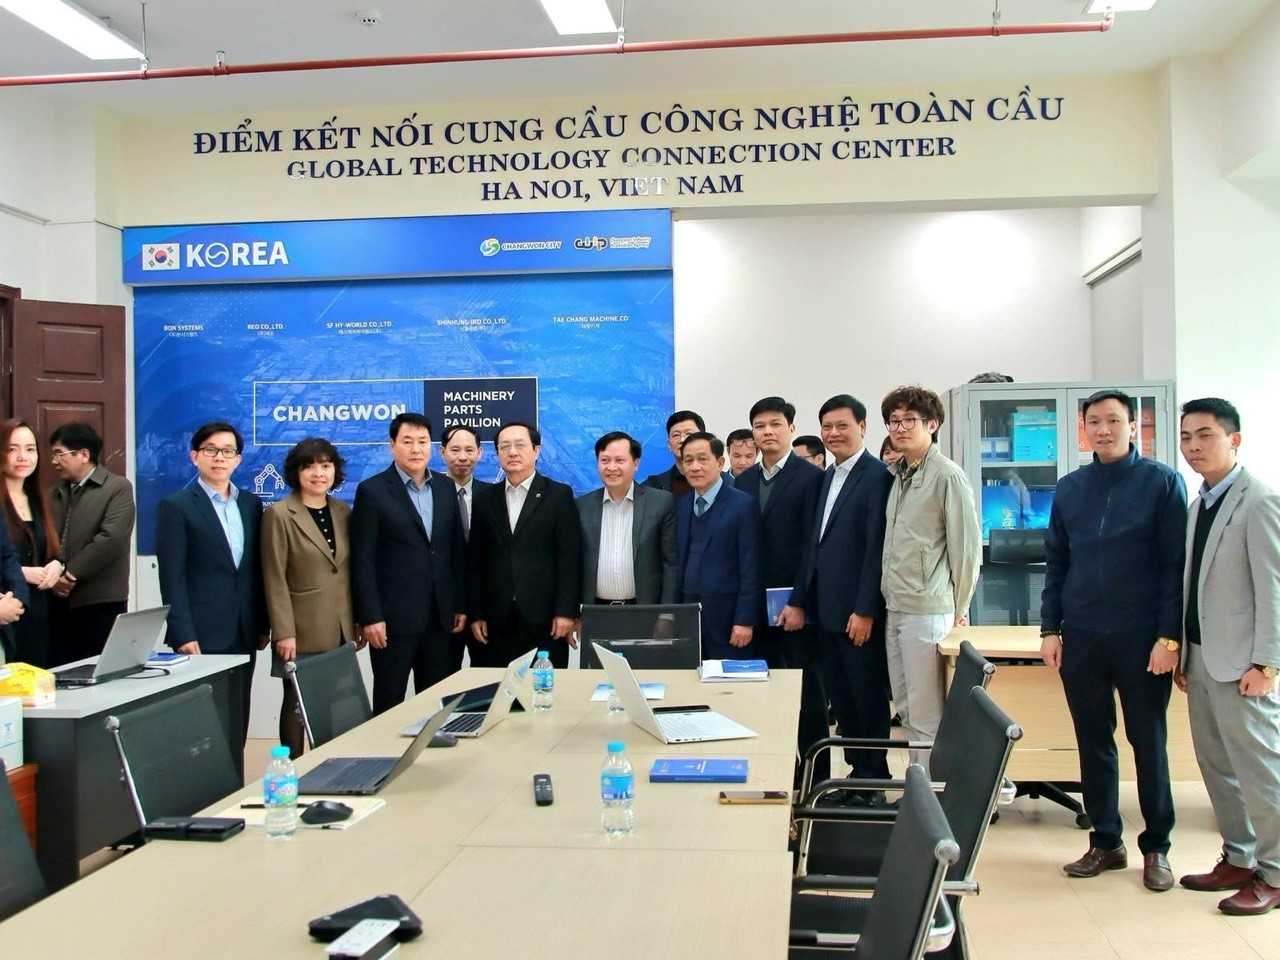 Bộ trưởng Huỳnh Thành Đạt thăm hoạt động Điểm kết nối cung cầu công nghệ